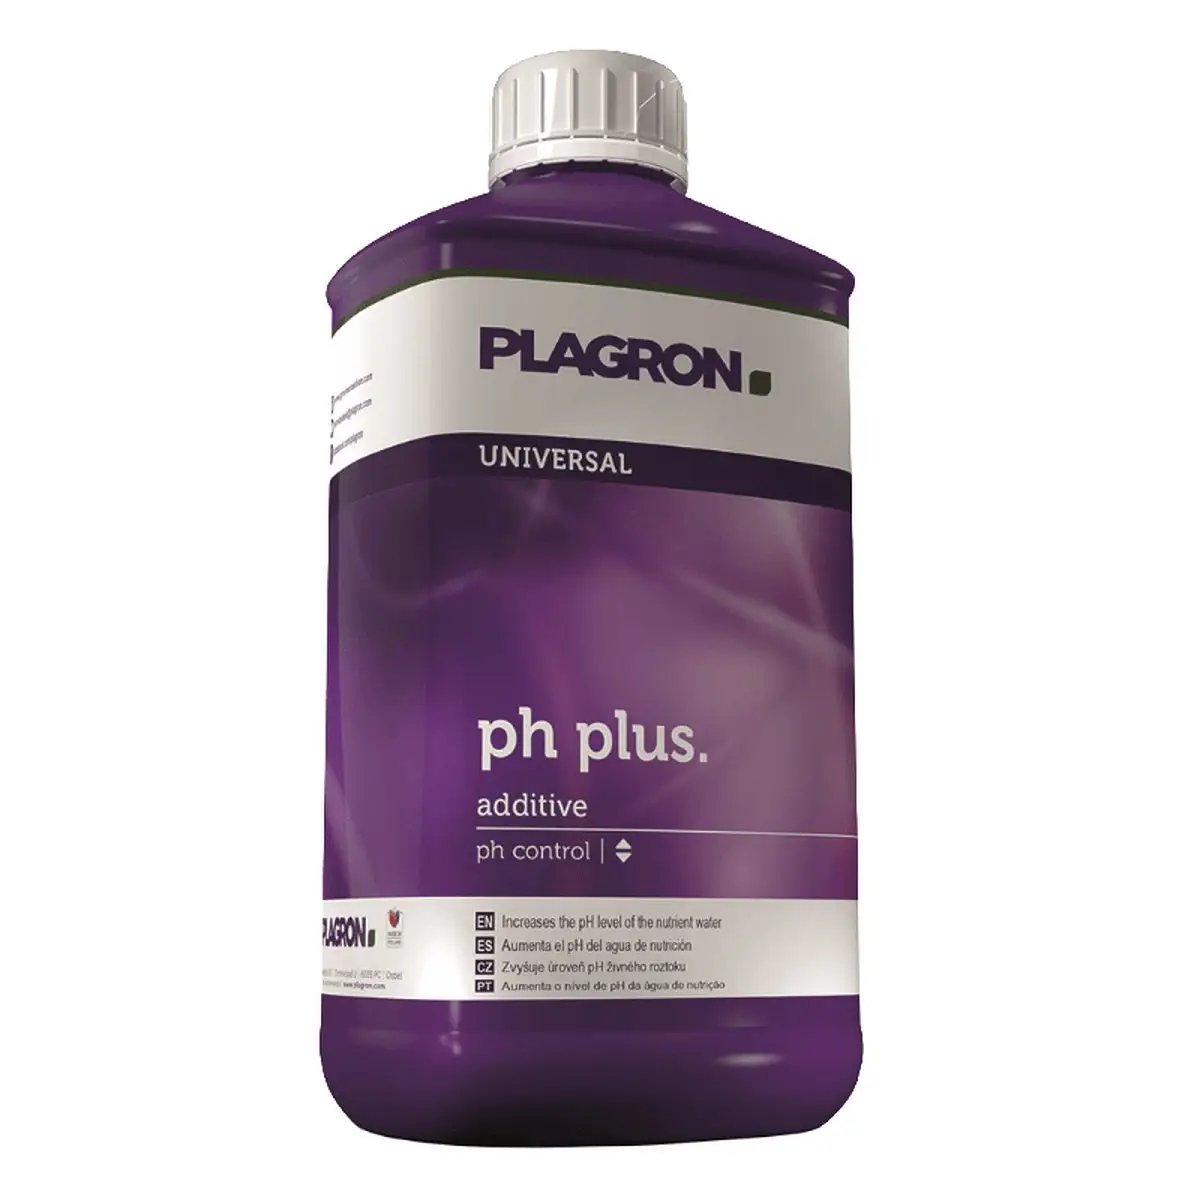 Plagron PH Plus 1 litre